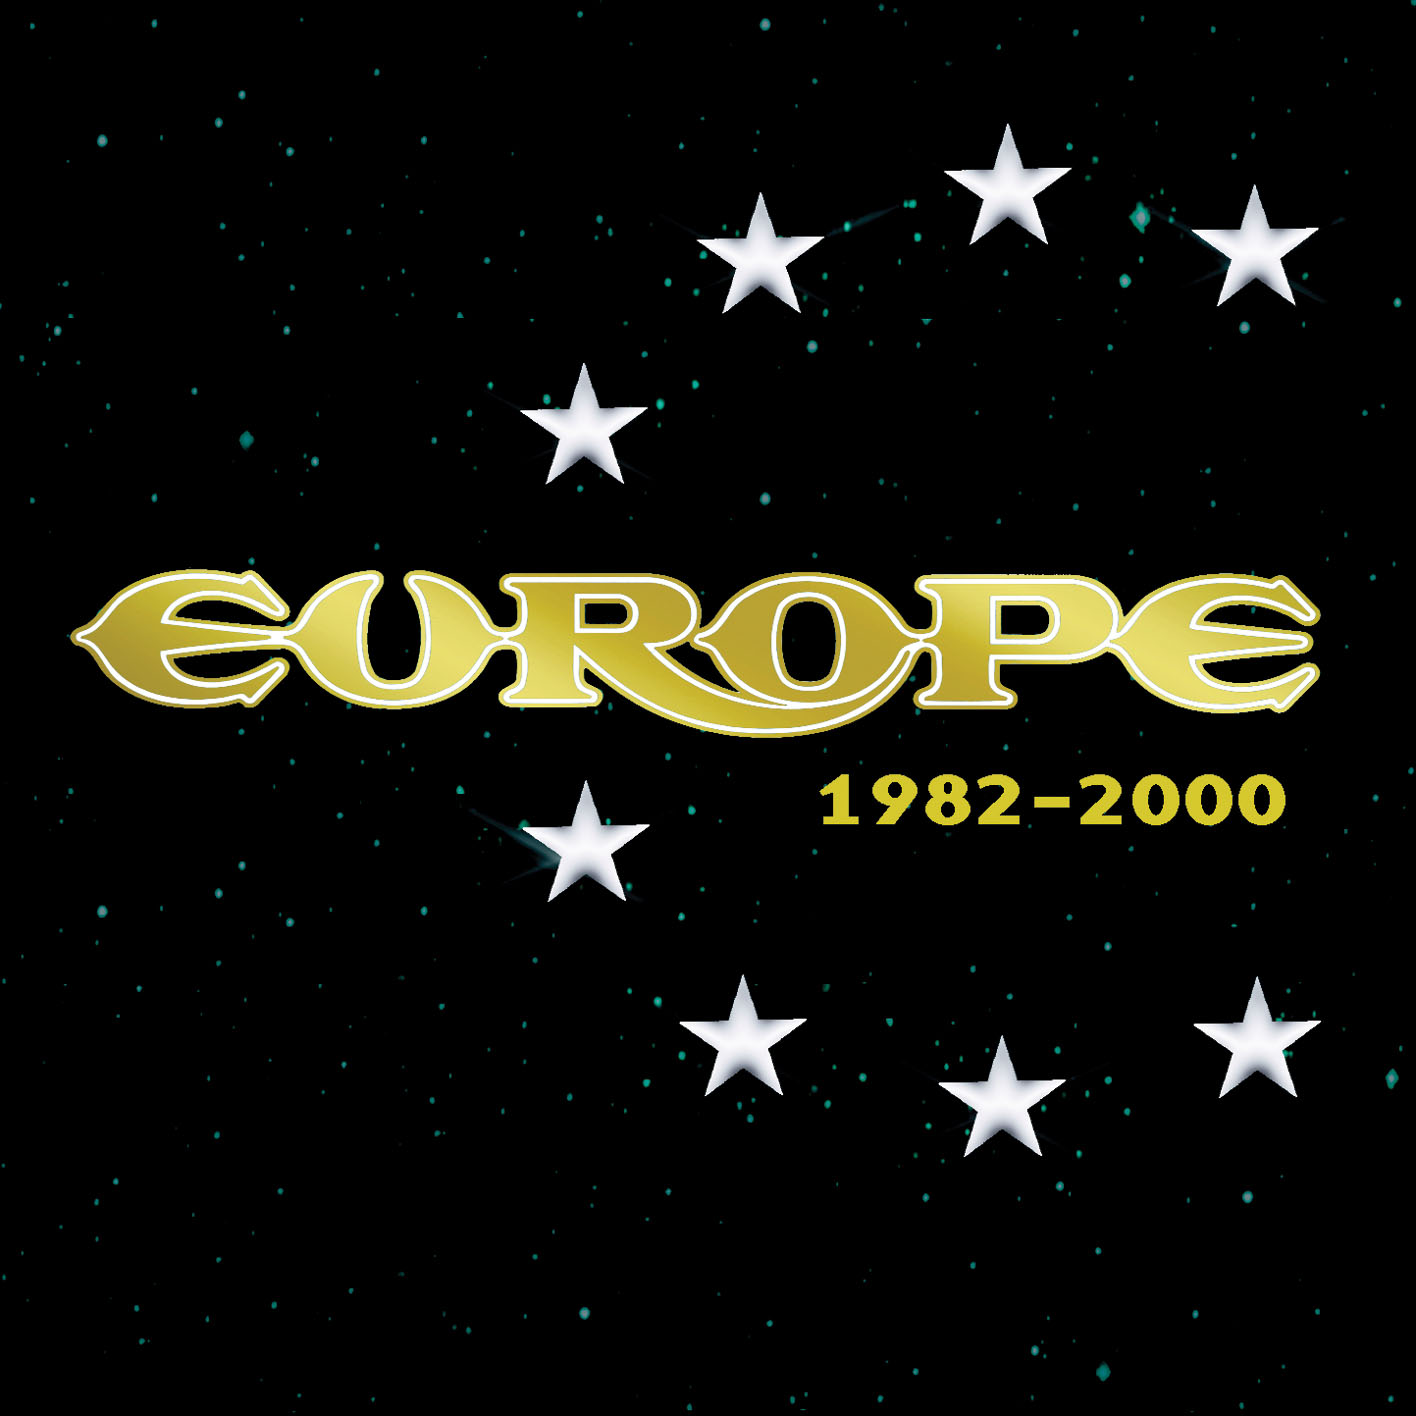 1982 – 2000